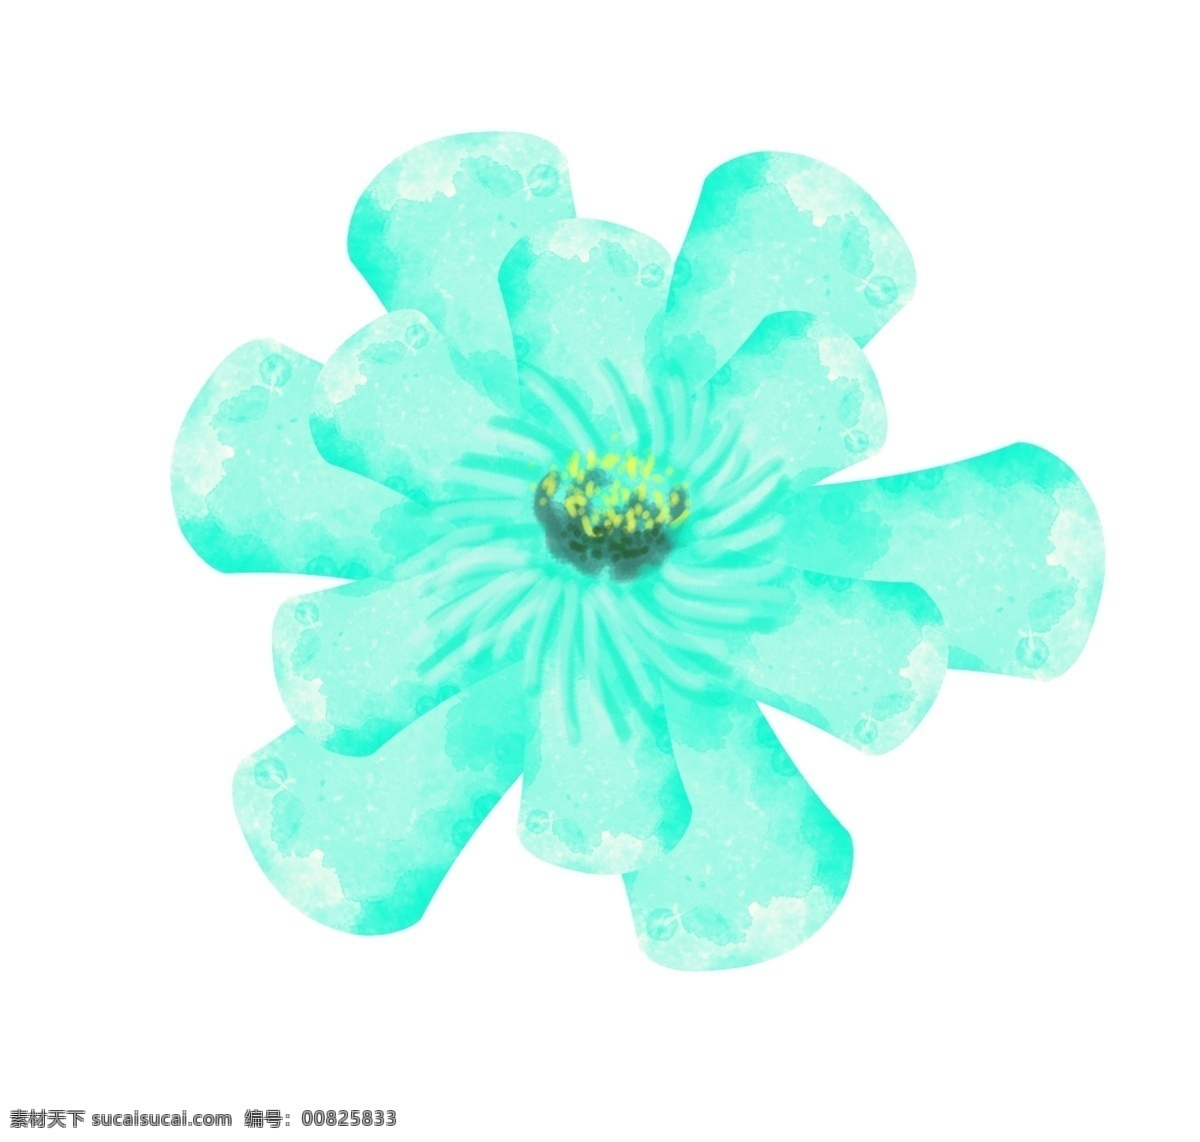 漂亮 花朵 装饰 插画 蓝色的花朵 漂亮的花朵 创意花朵 立体花朵 精美花朵 卡通花朵 花朵装饰